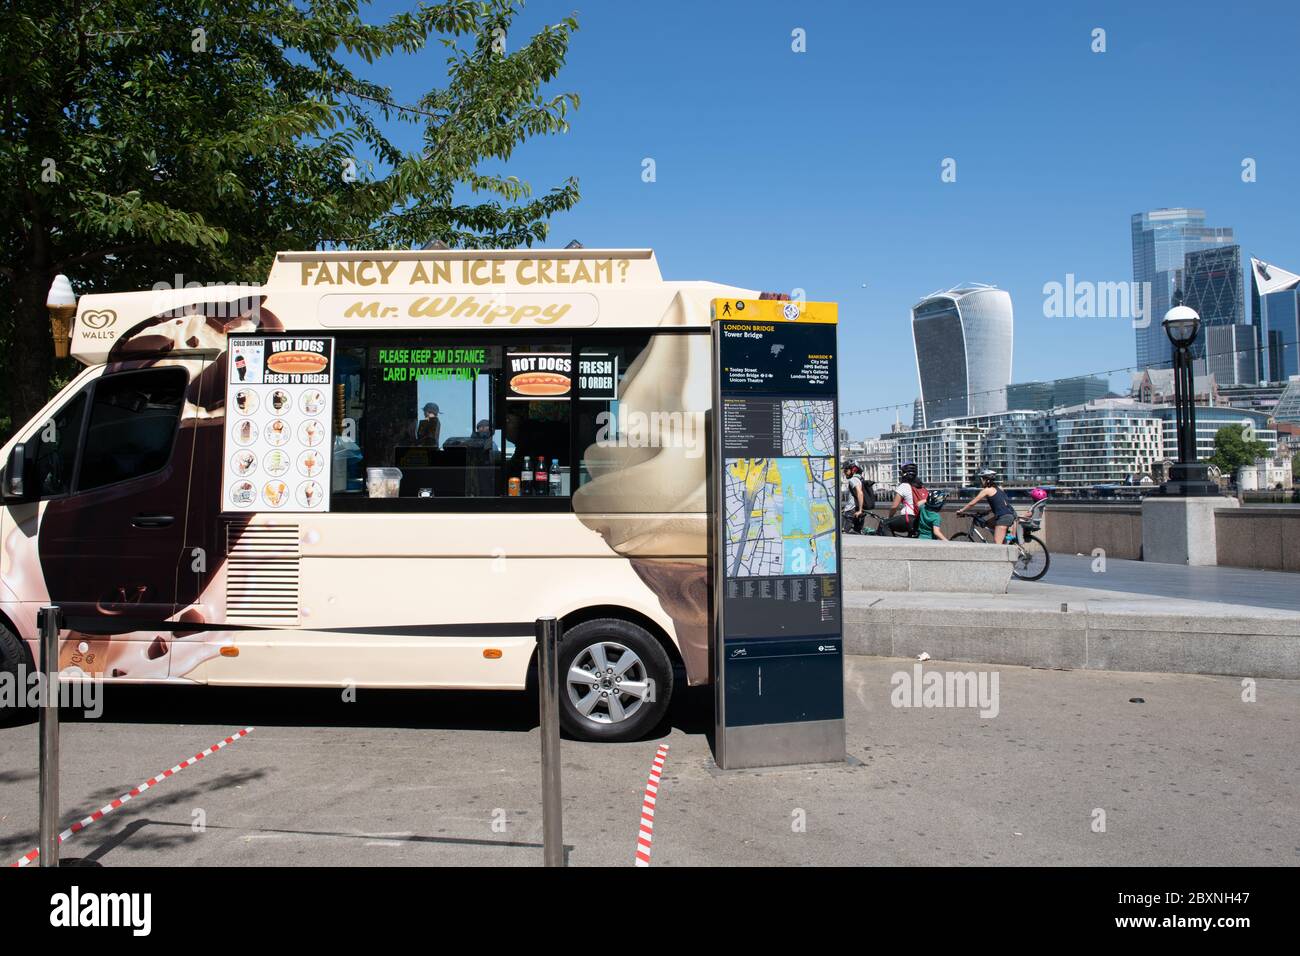 Ein Eiswagen, der an einem schönen warmen sonnigen Tag auf der South Bank mit Blick auf die City of London im Hintergrund gehandelt wird. London. GROSSBRITANNIEN. Stockfoto